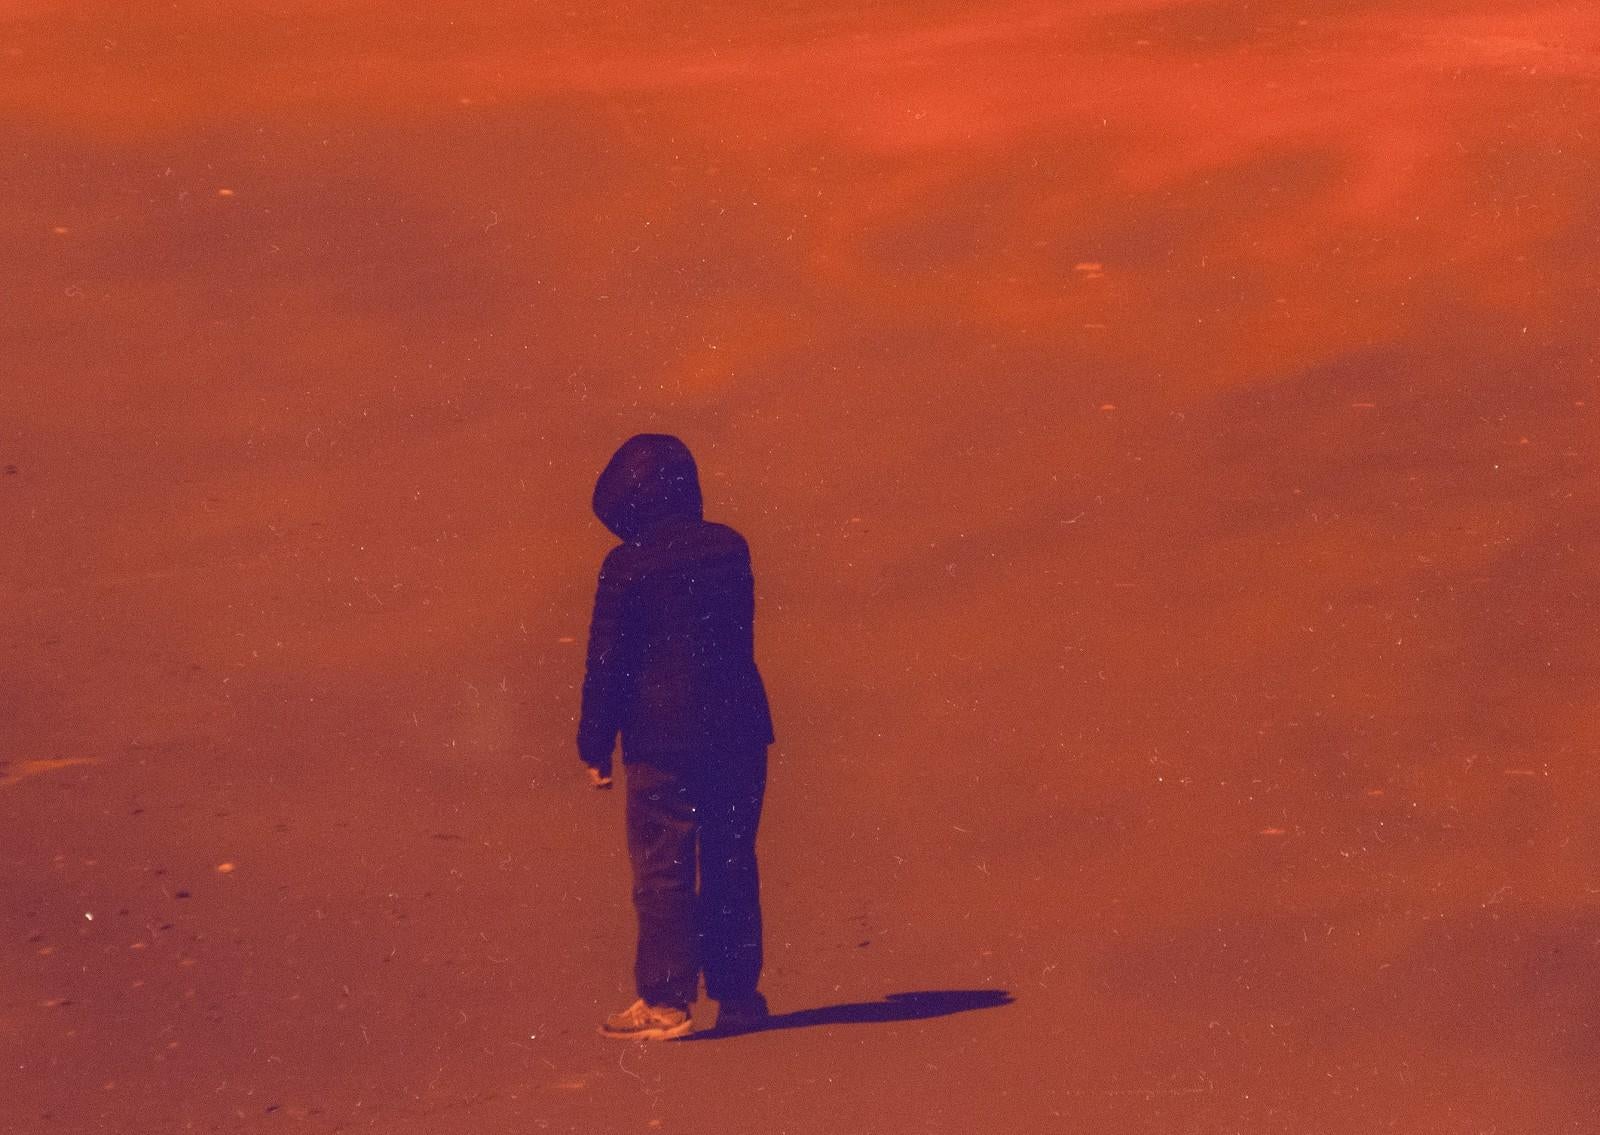 Des hélicoptères survolent une silhouette solitaire sur un sol brûlé dans cette image dramatique de Mark Bartkiw. L'artiste perturbe le paysage en juxtaposant des éléments attendus à une imagerie onirique. Cette C.I.C. est scellée entre du dibond et